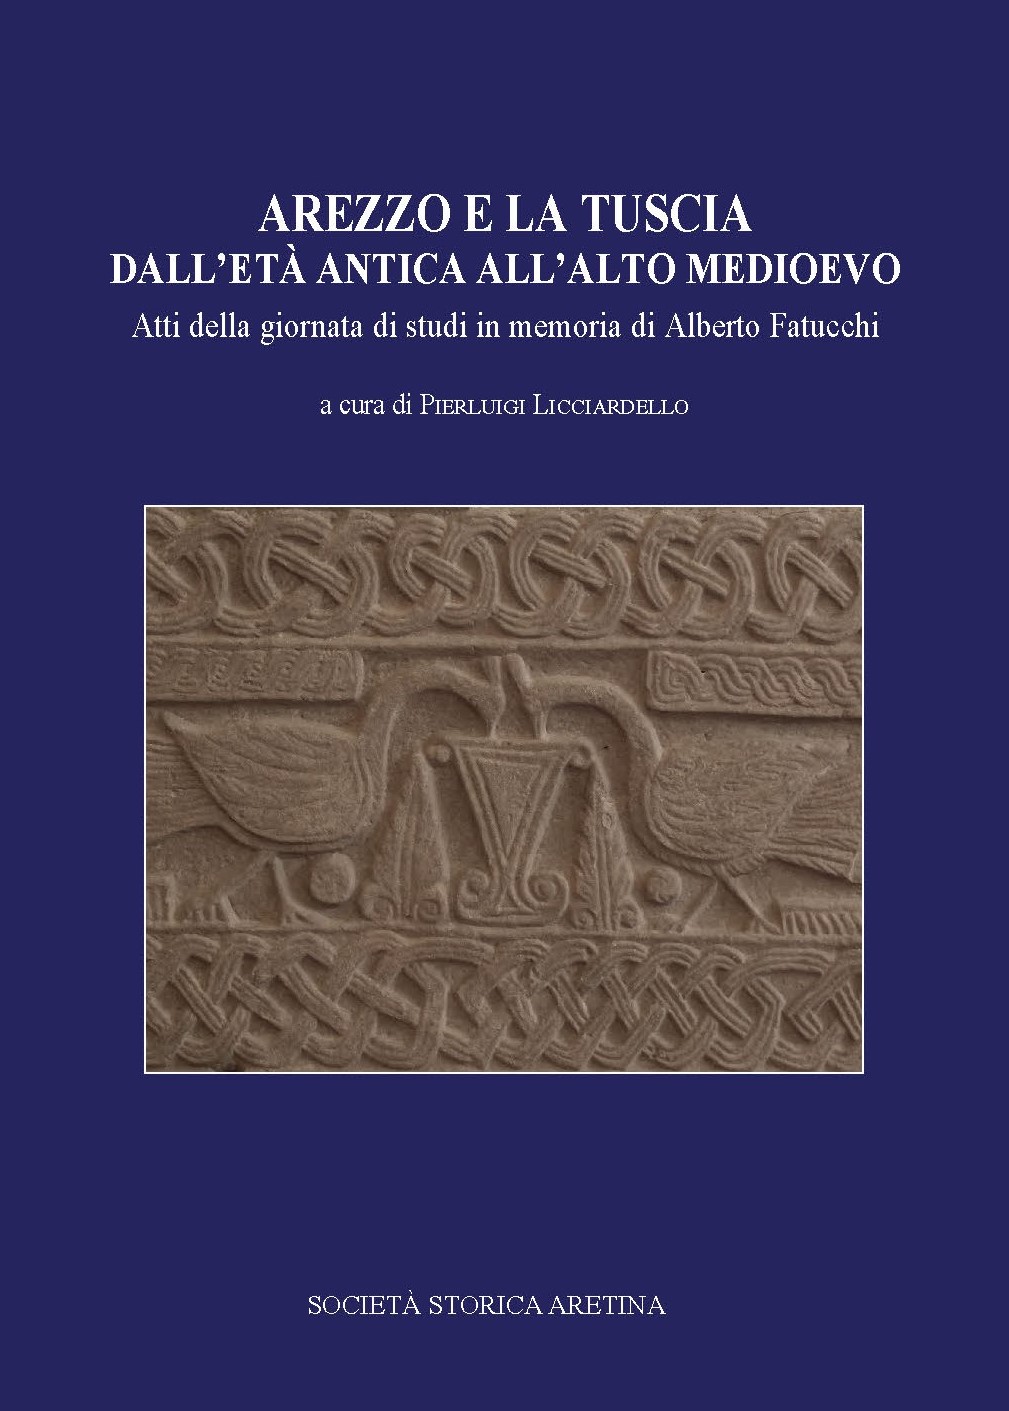 Martedì 19 ottobre la presentazione del libro “Arezzo e la Tuscia dall’età antica all’alto Medioevo” di Alberto Fatucchi